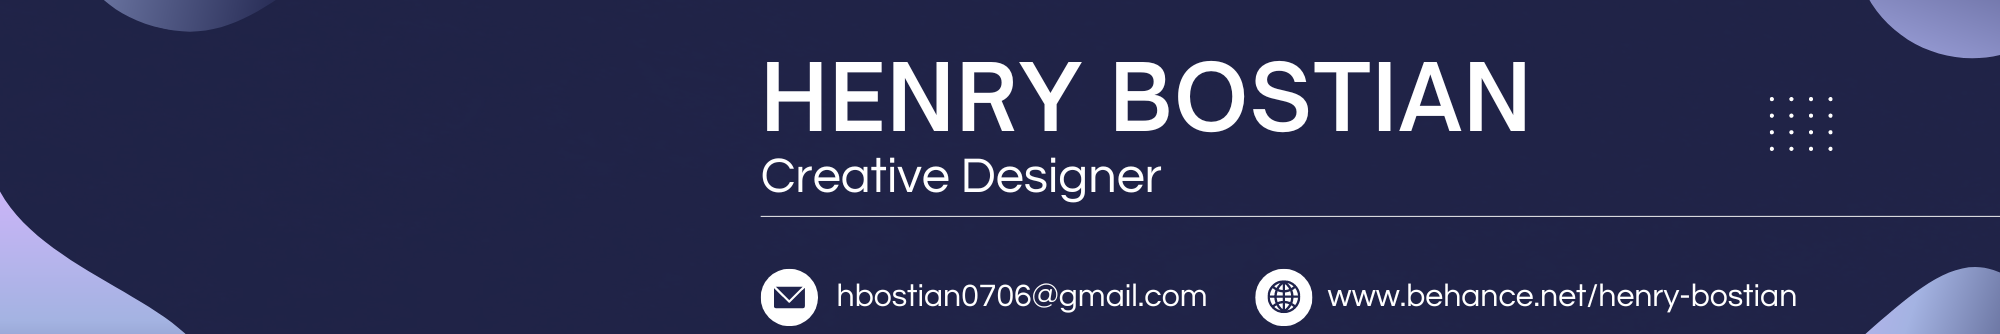 Henry Bostian's profile banner